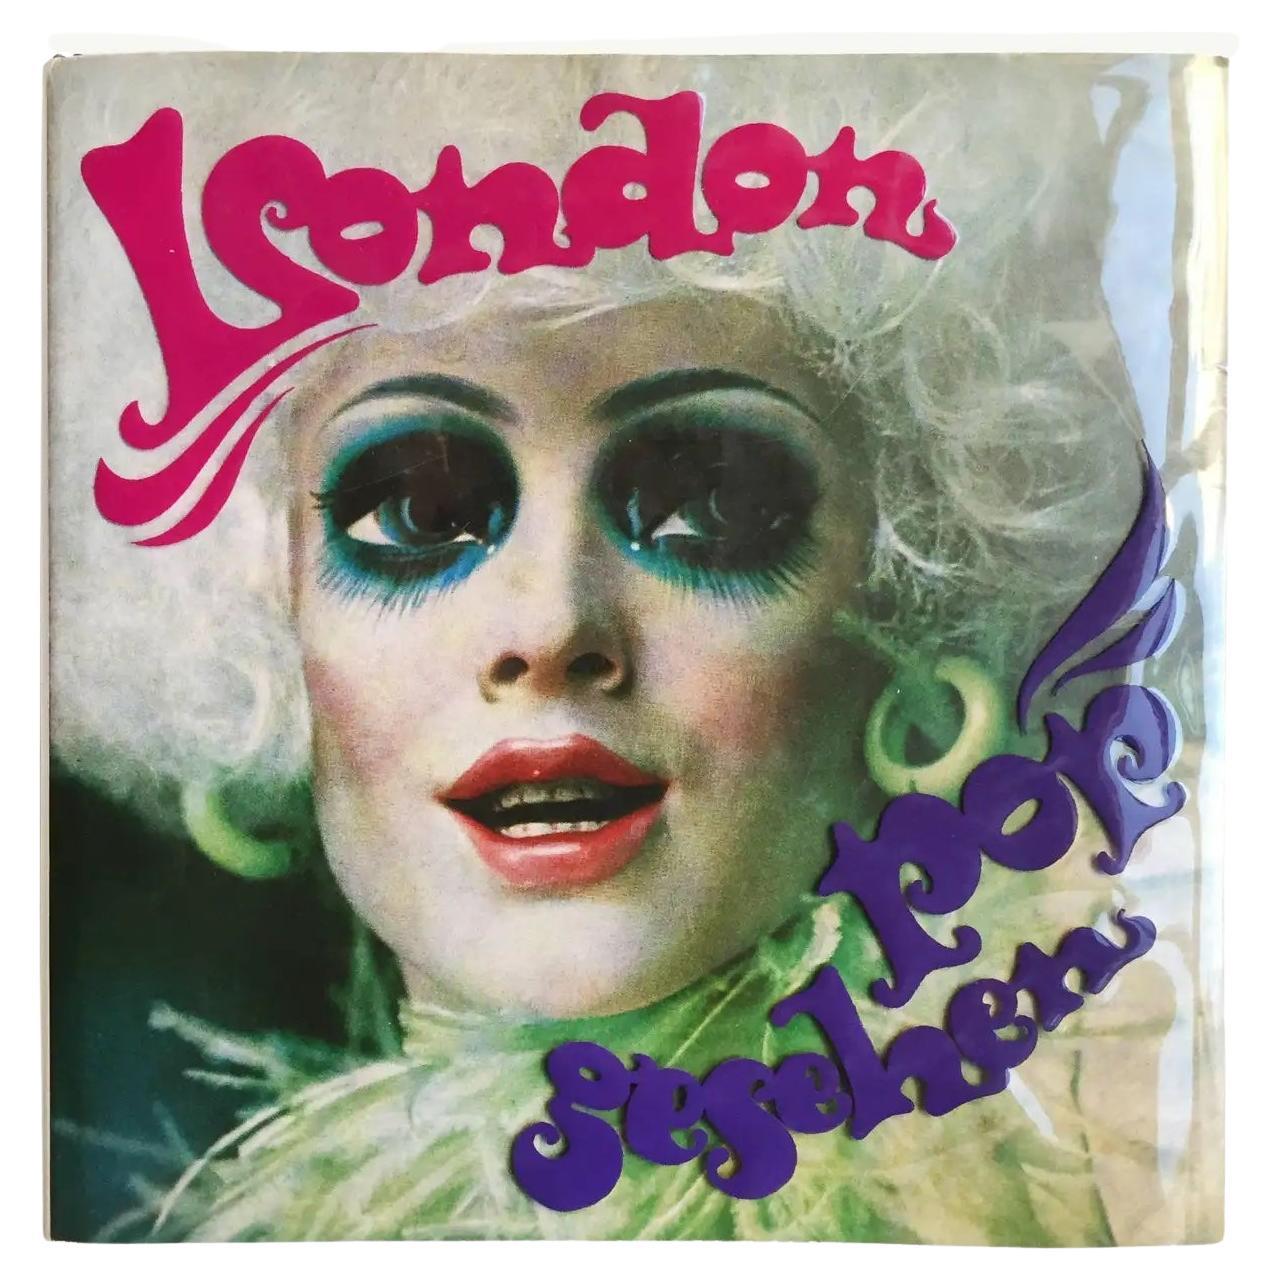 London Pop Gesehen – J. Suess, G. Dommermuth & H. Maier - 1st Edition, 1968